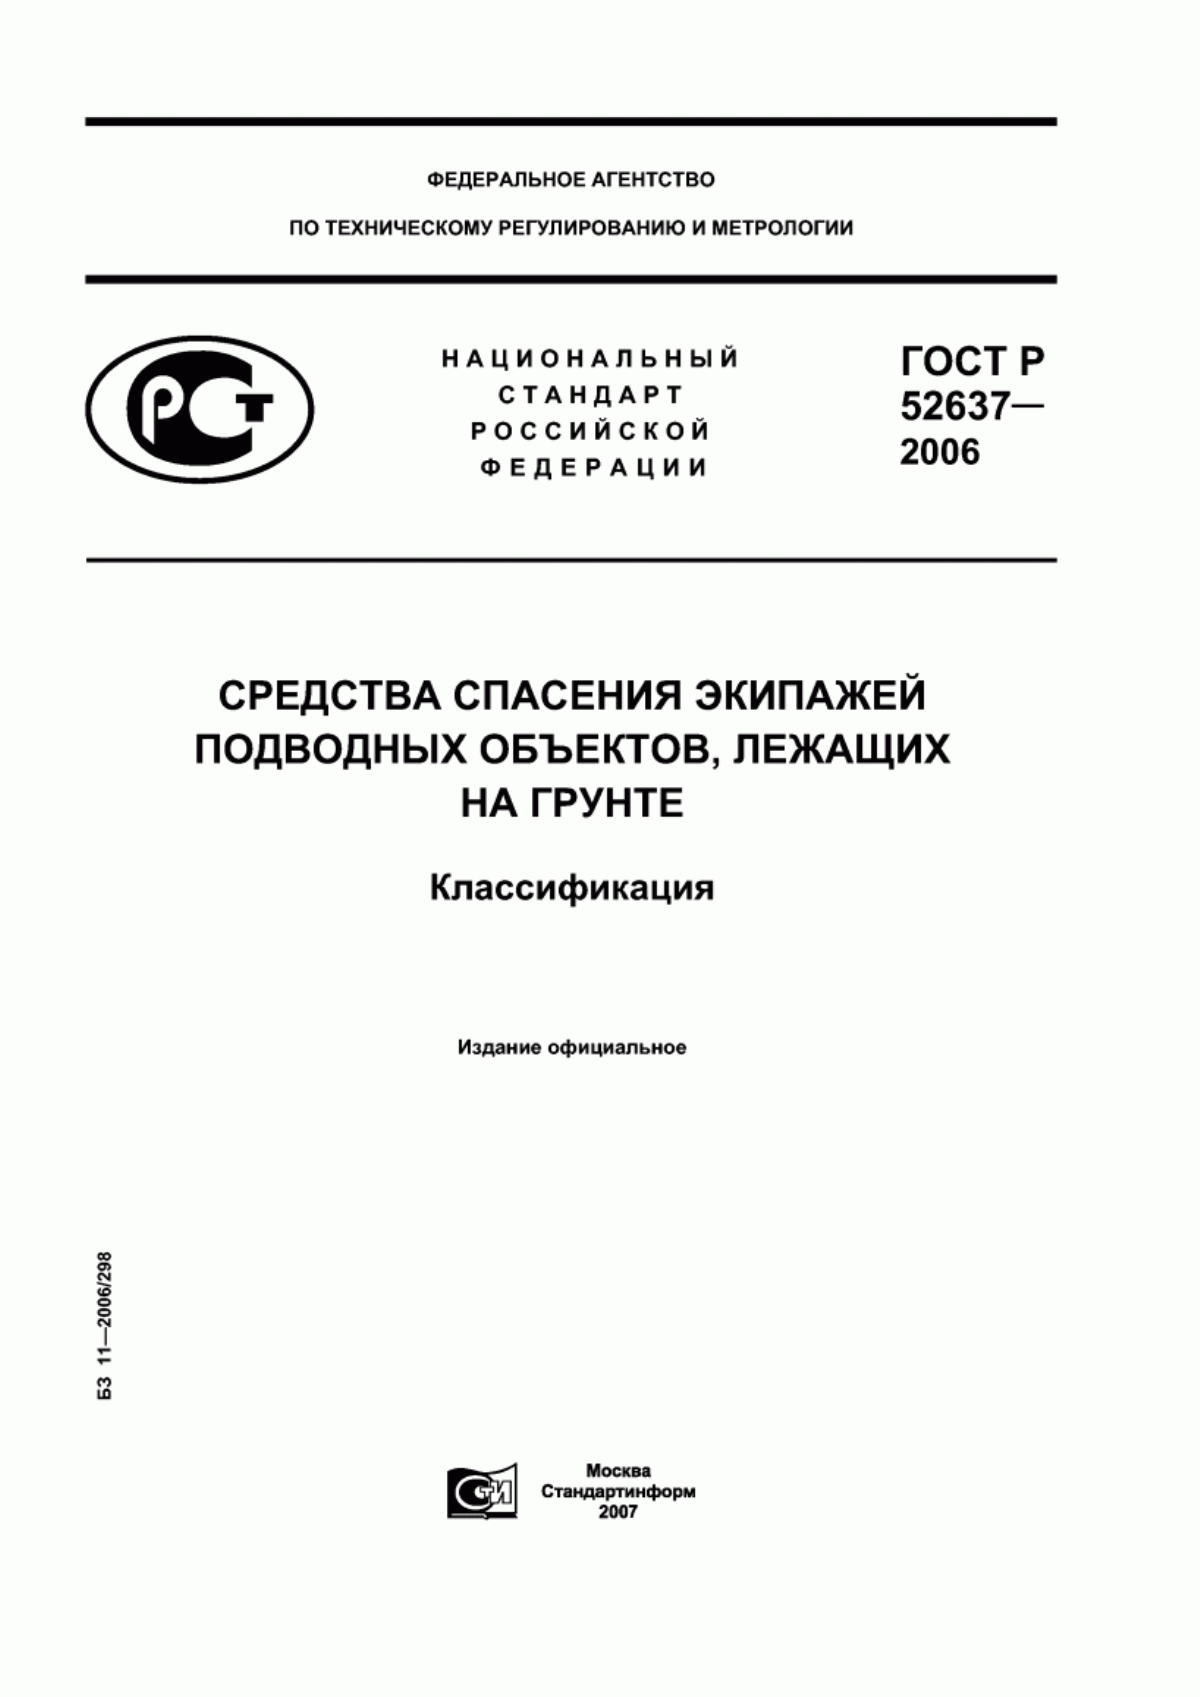 ГОСТ Р 52637-2006 Средства спасения экипажей подводных объектов, лежащих на грунте. Классификация